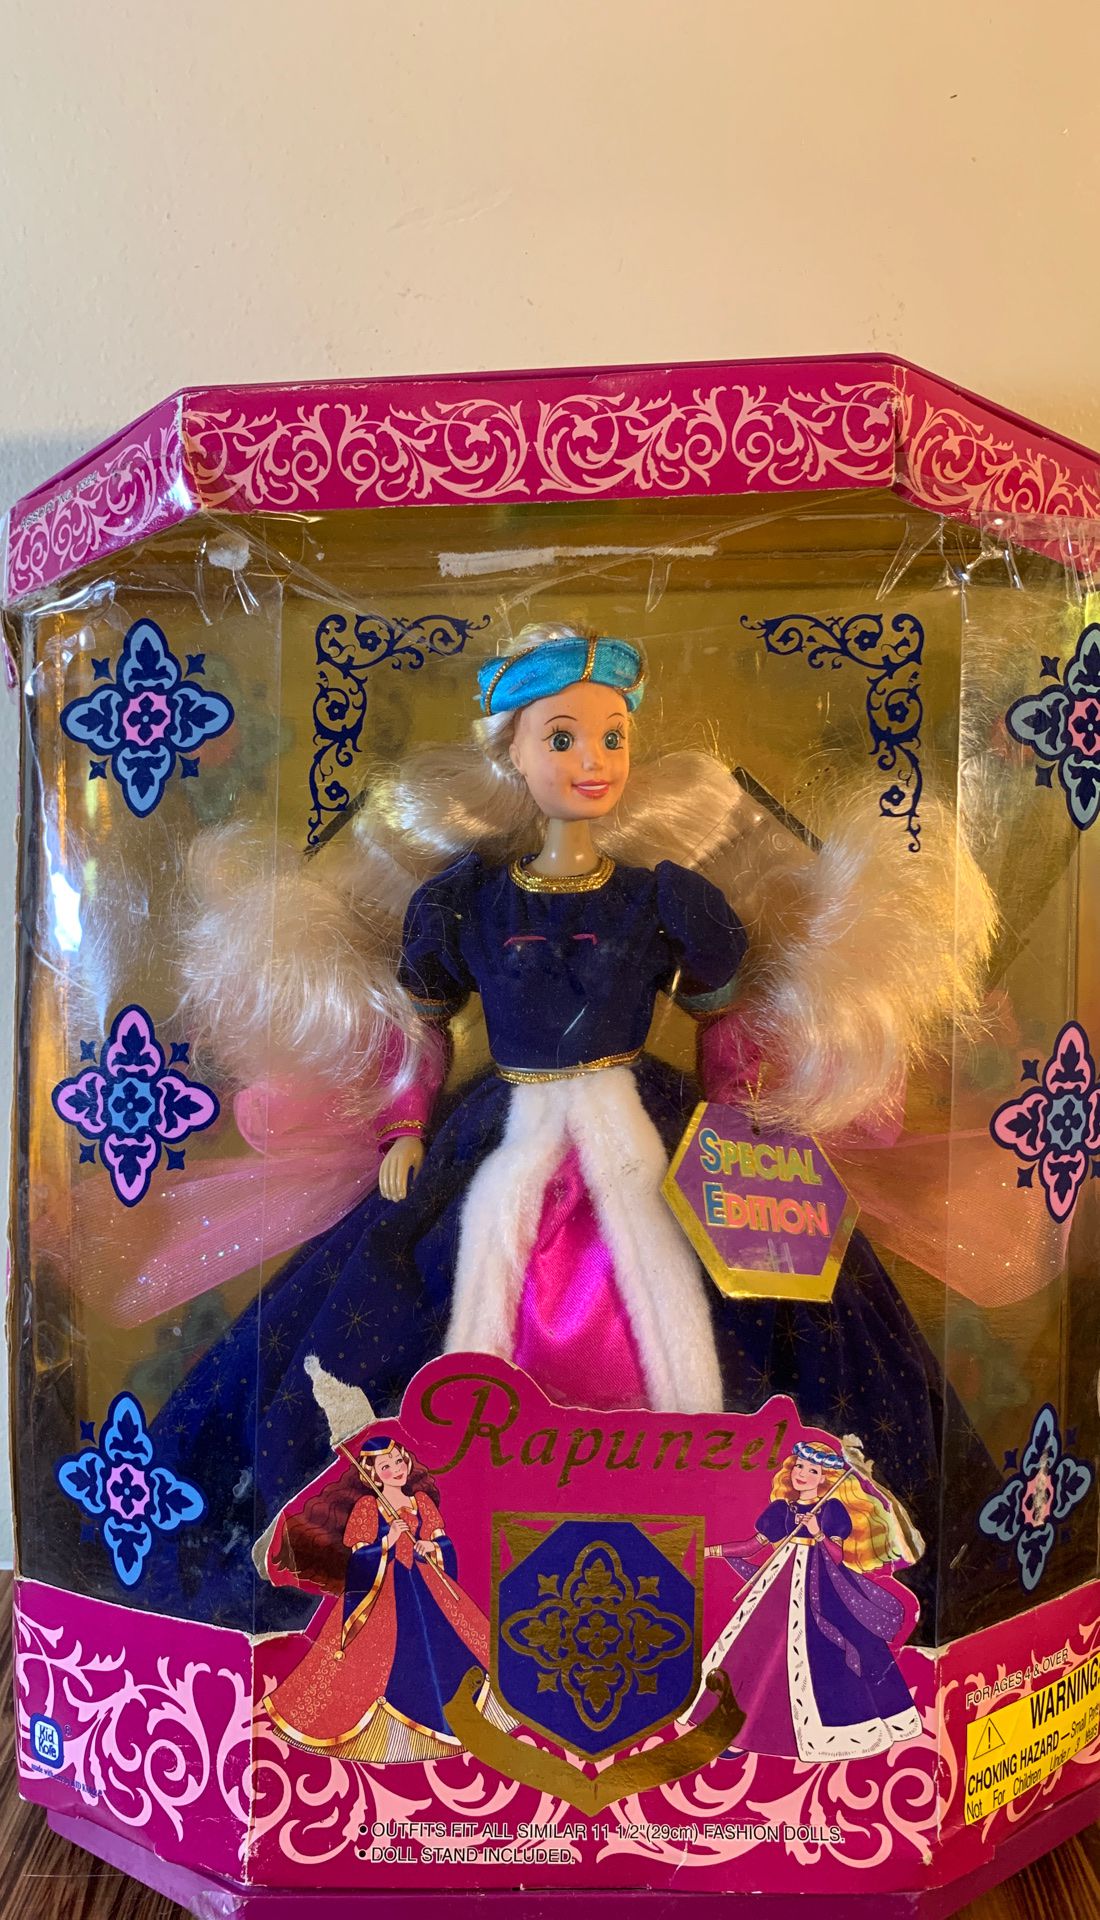 Barbie Rapunzel special edition